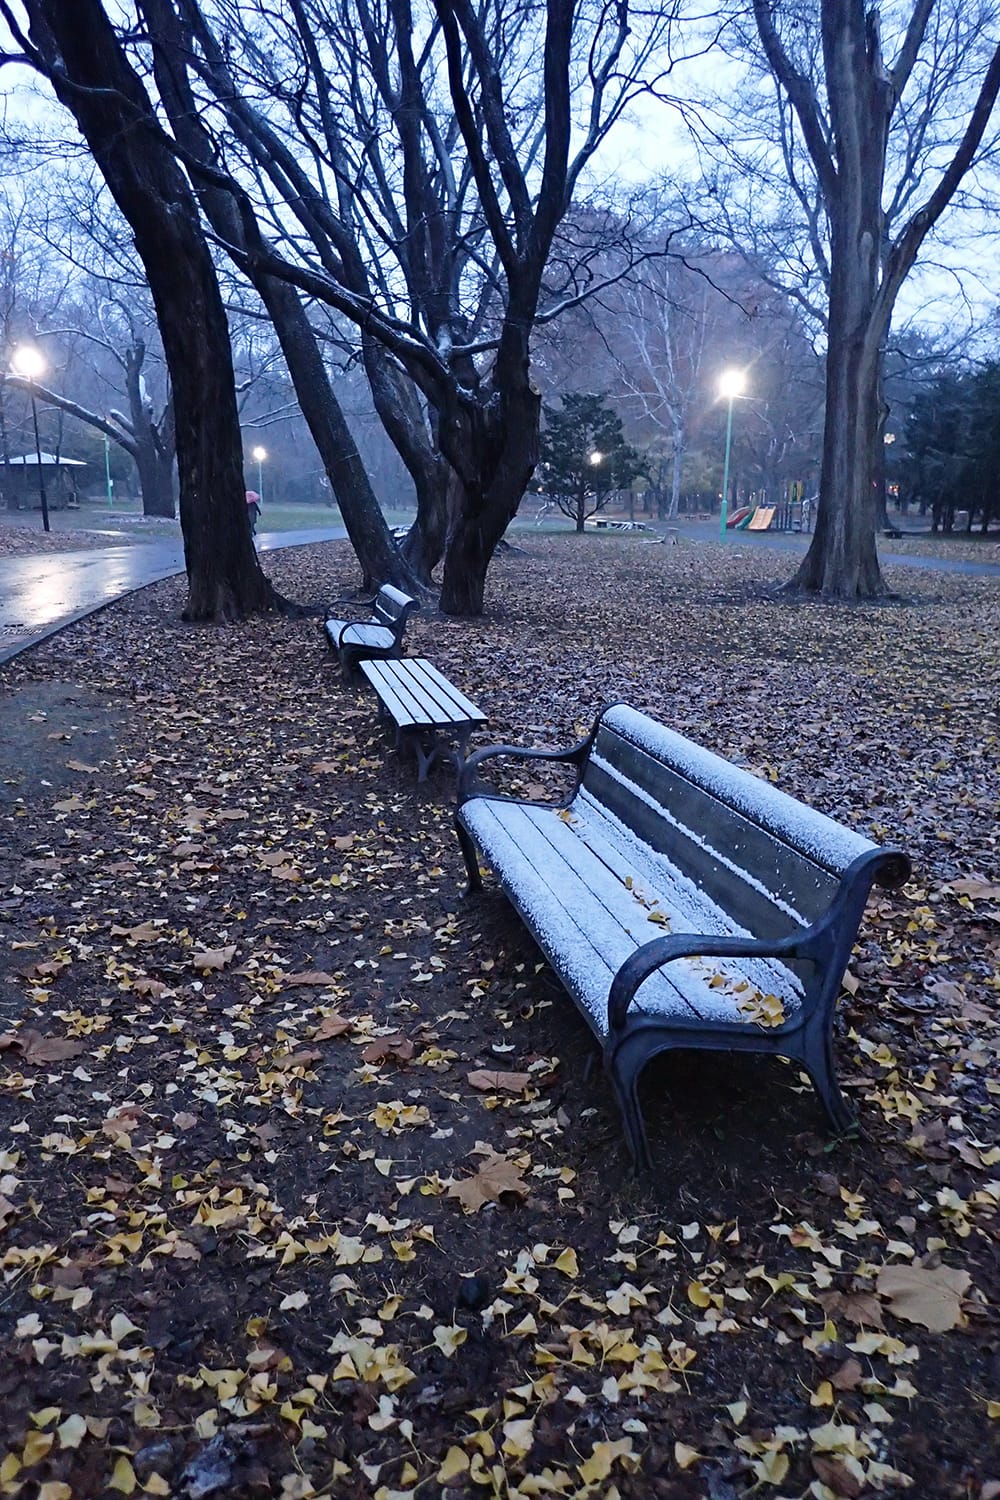 円山公園のベンチに初雪が積もる イチョウの黄色い落ち葉も鮮やかなまま